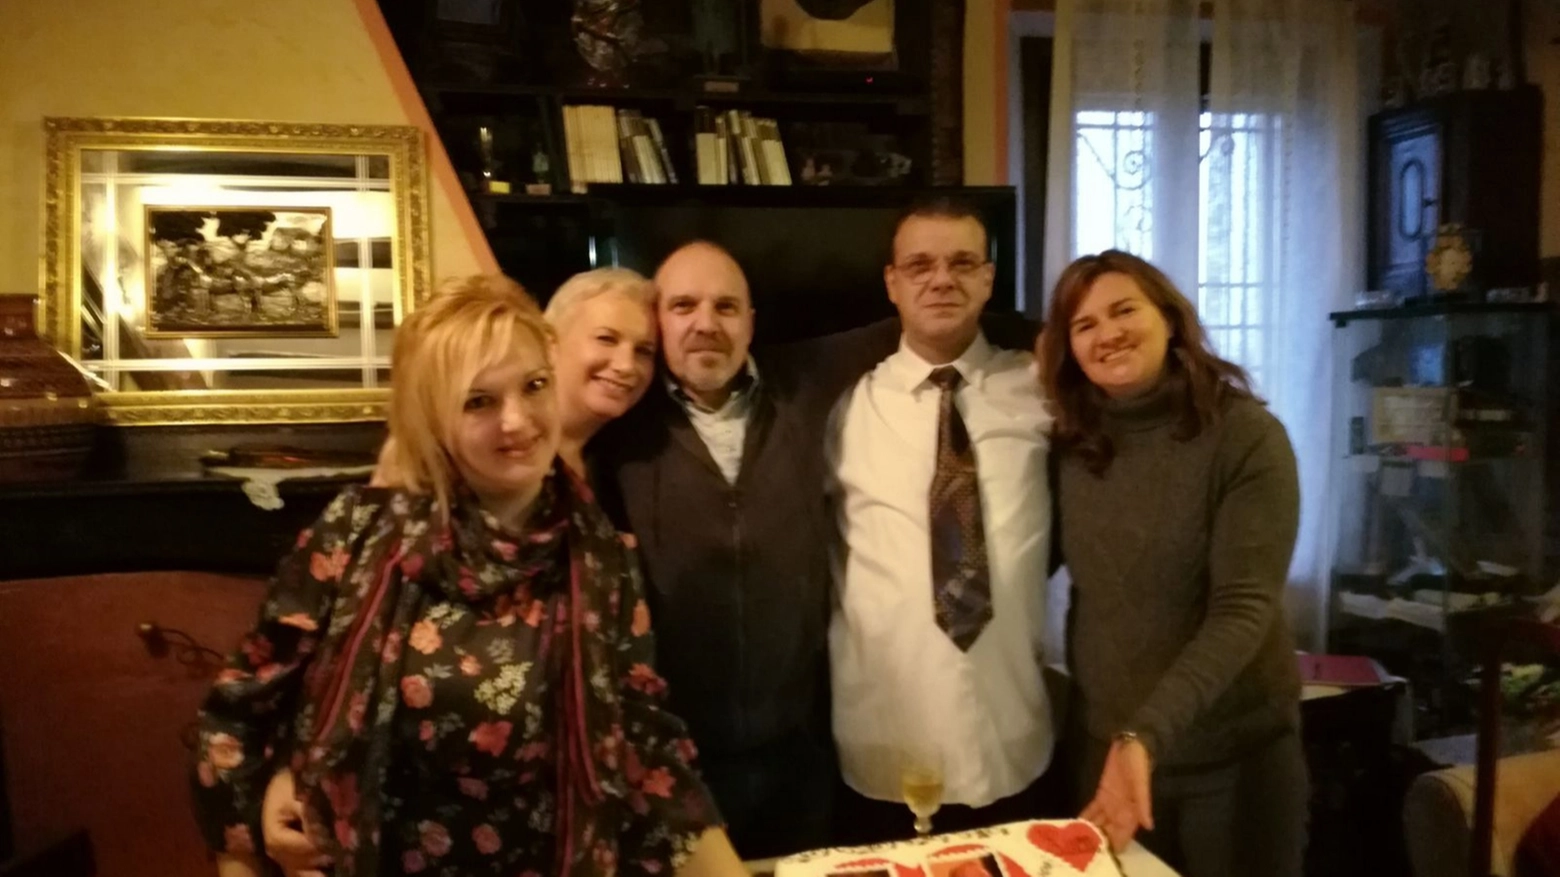 Da sinistra: Belinda, Monica, Mauro, Marco e Annalisa a Bazzano (Bo)